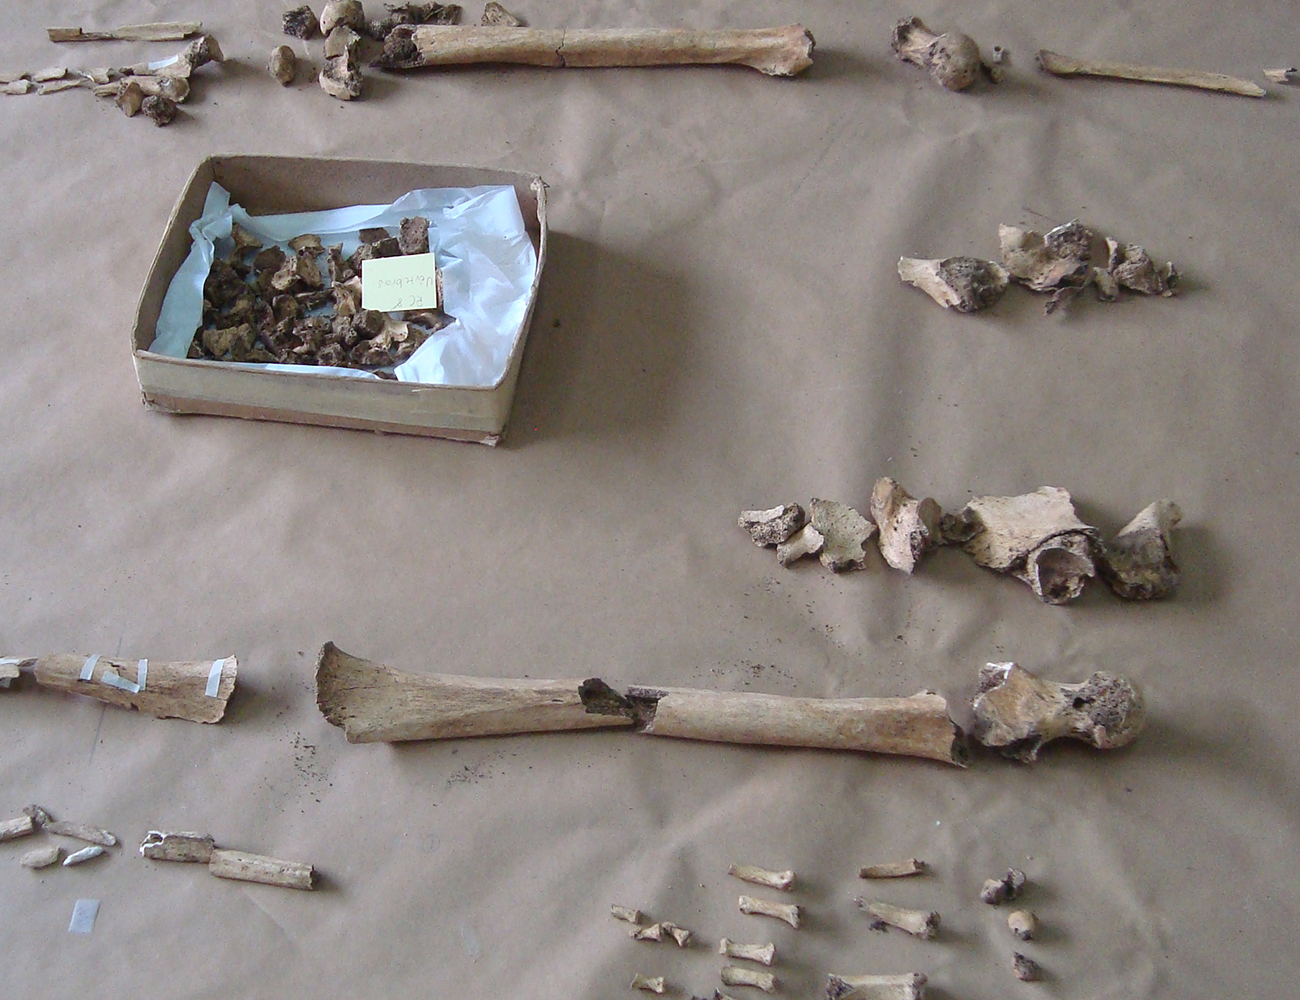 Los restos óseos encontrados en rescates arqueológicos arrojan información importante acerca de las personas que vivieron en el sitio.